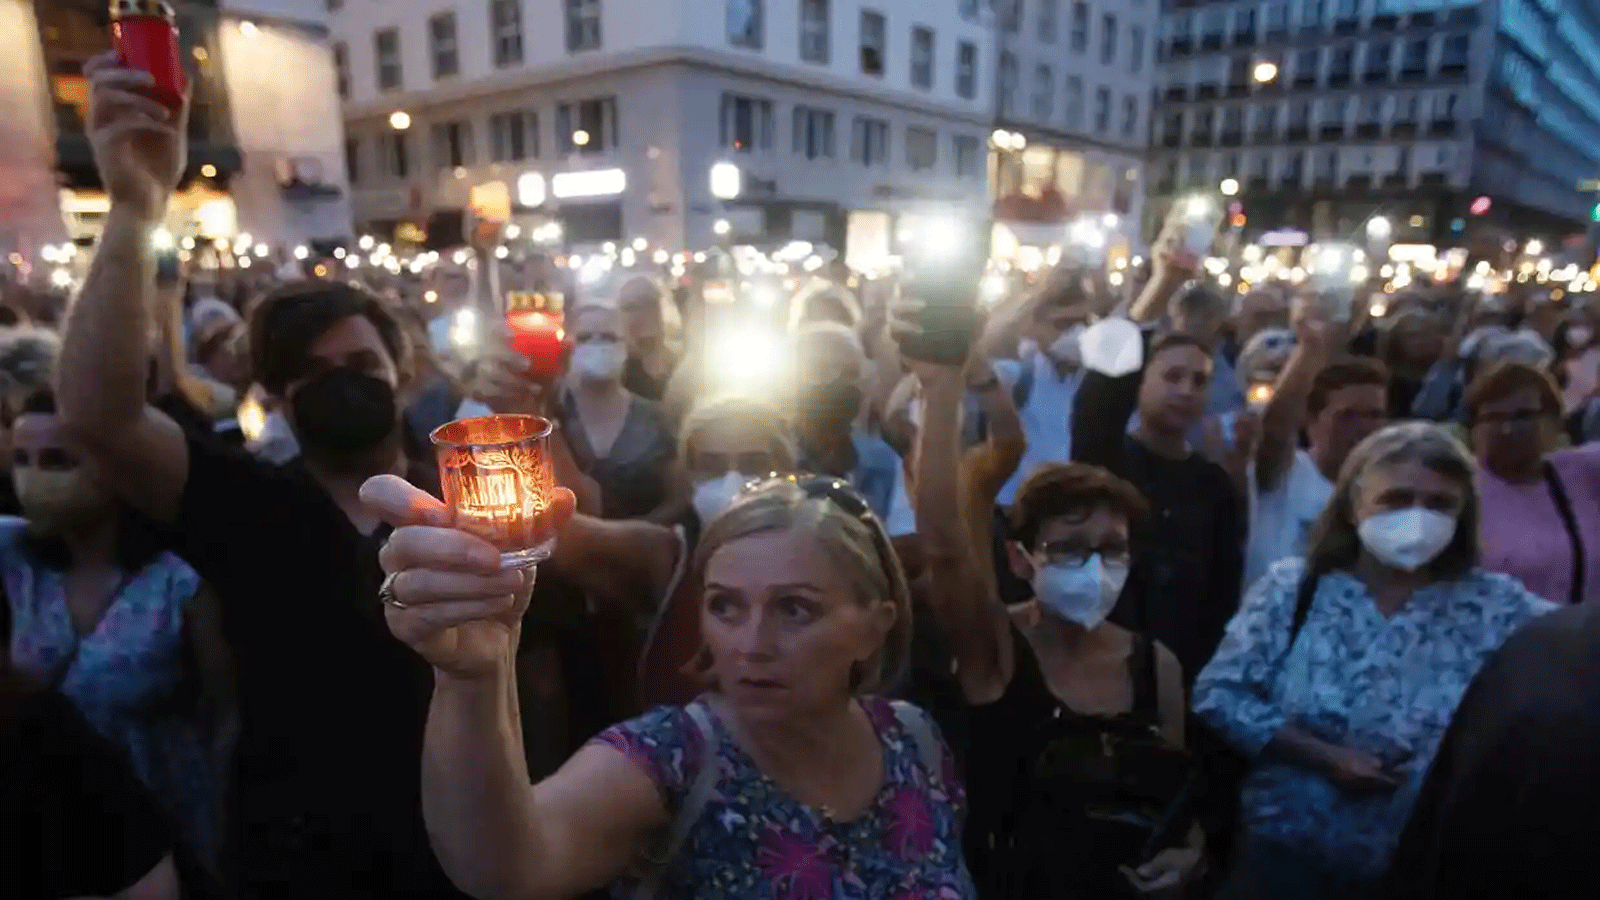  وقفة احتجاجية على ضوء الشموع في فيينا تخليداً لذكرى الطبيبة ليزا ماريا كيلرماير